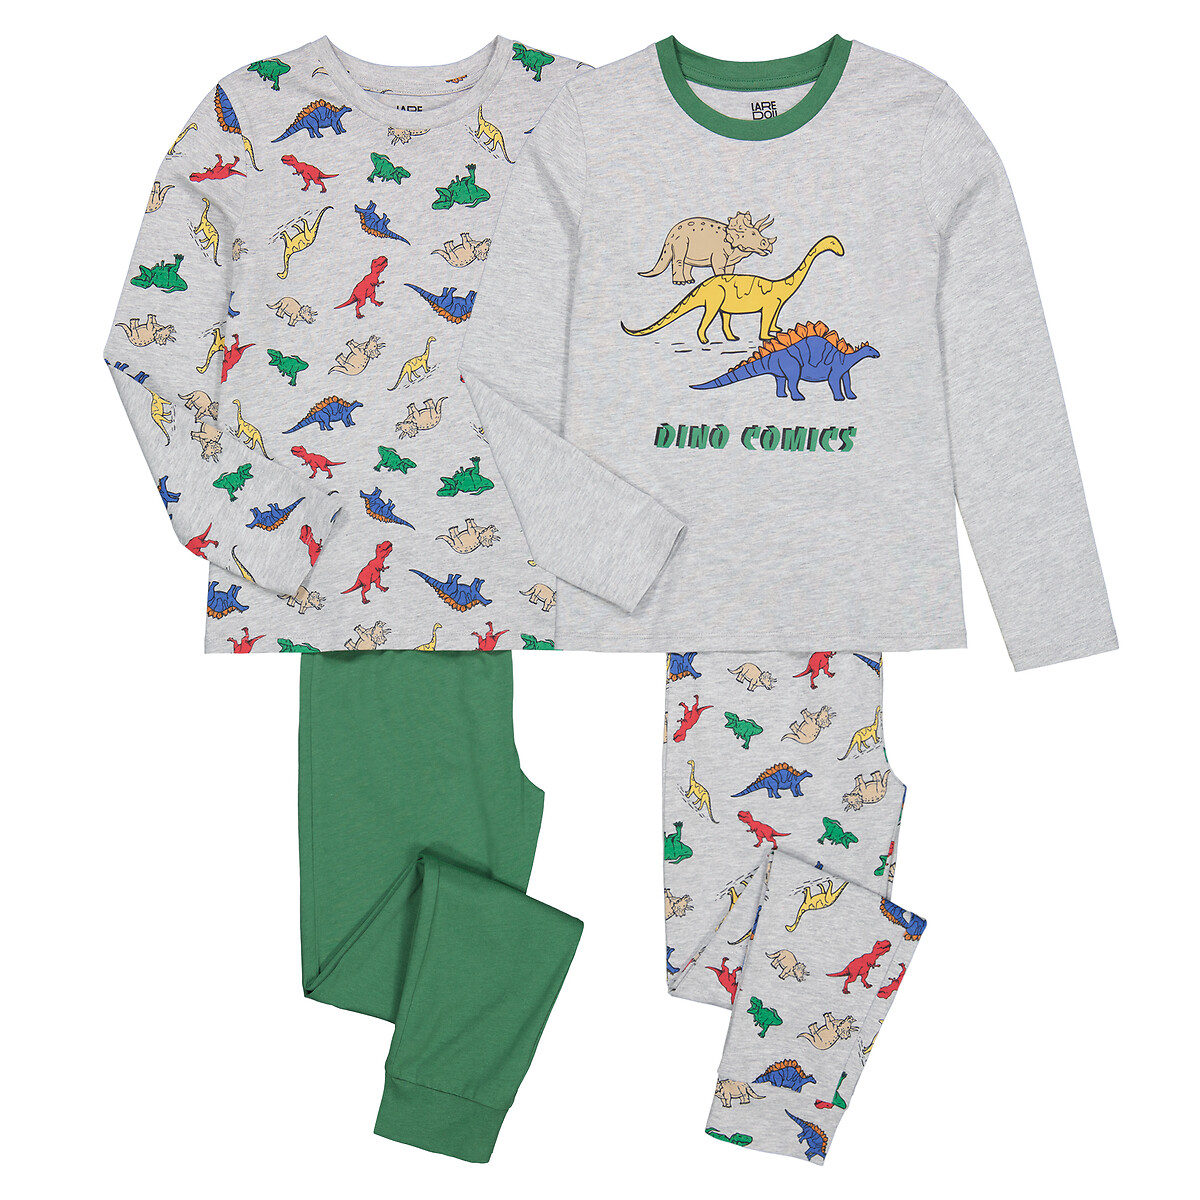 Pack of 2 Pyjamas in Dinosaur Print Cotton